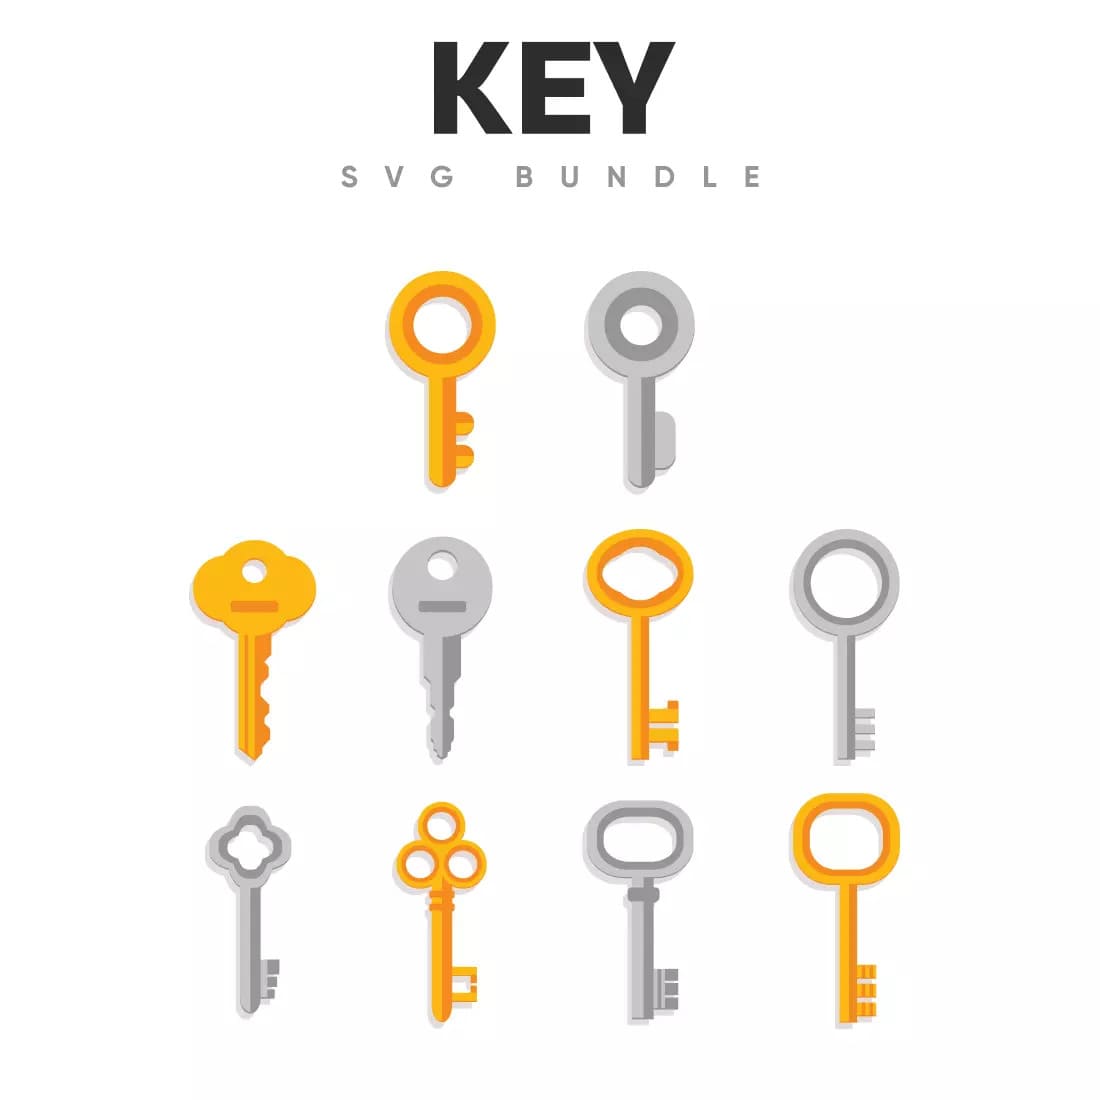 Key SVG Bundle Preview.